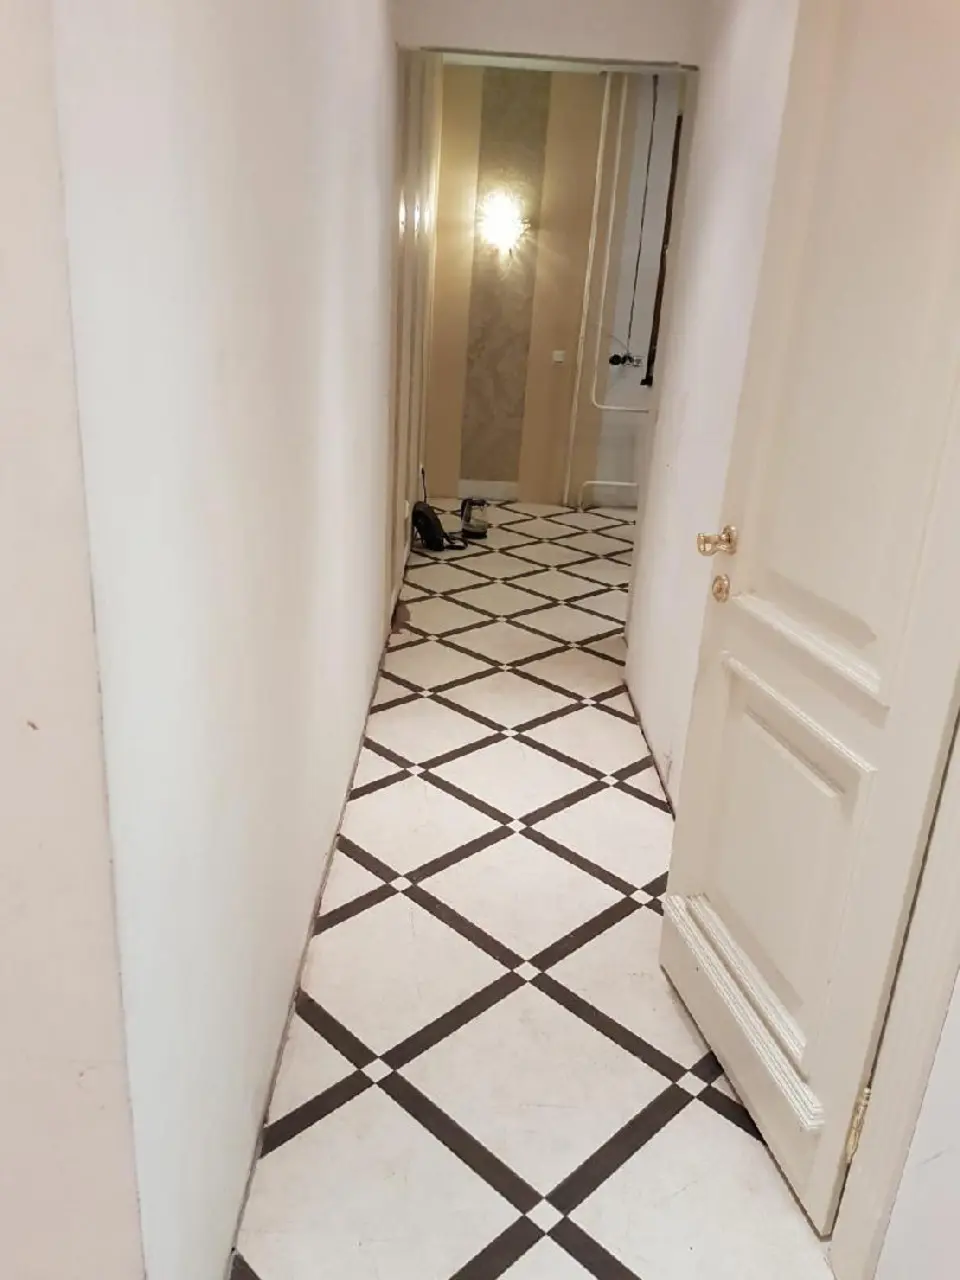 Плитка на пол в коридор